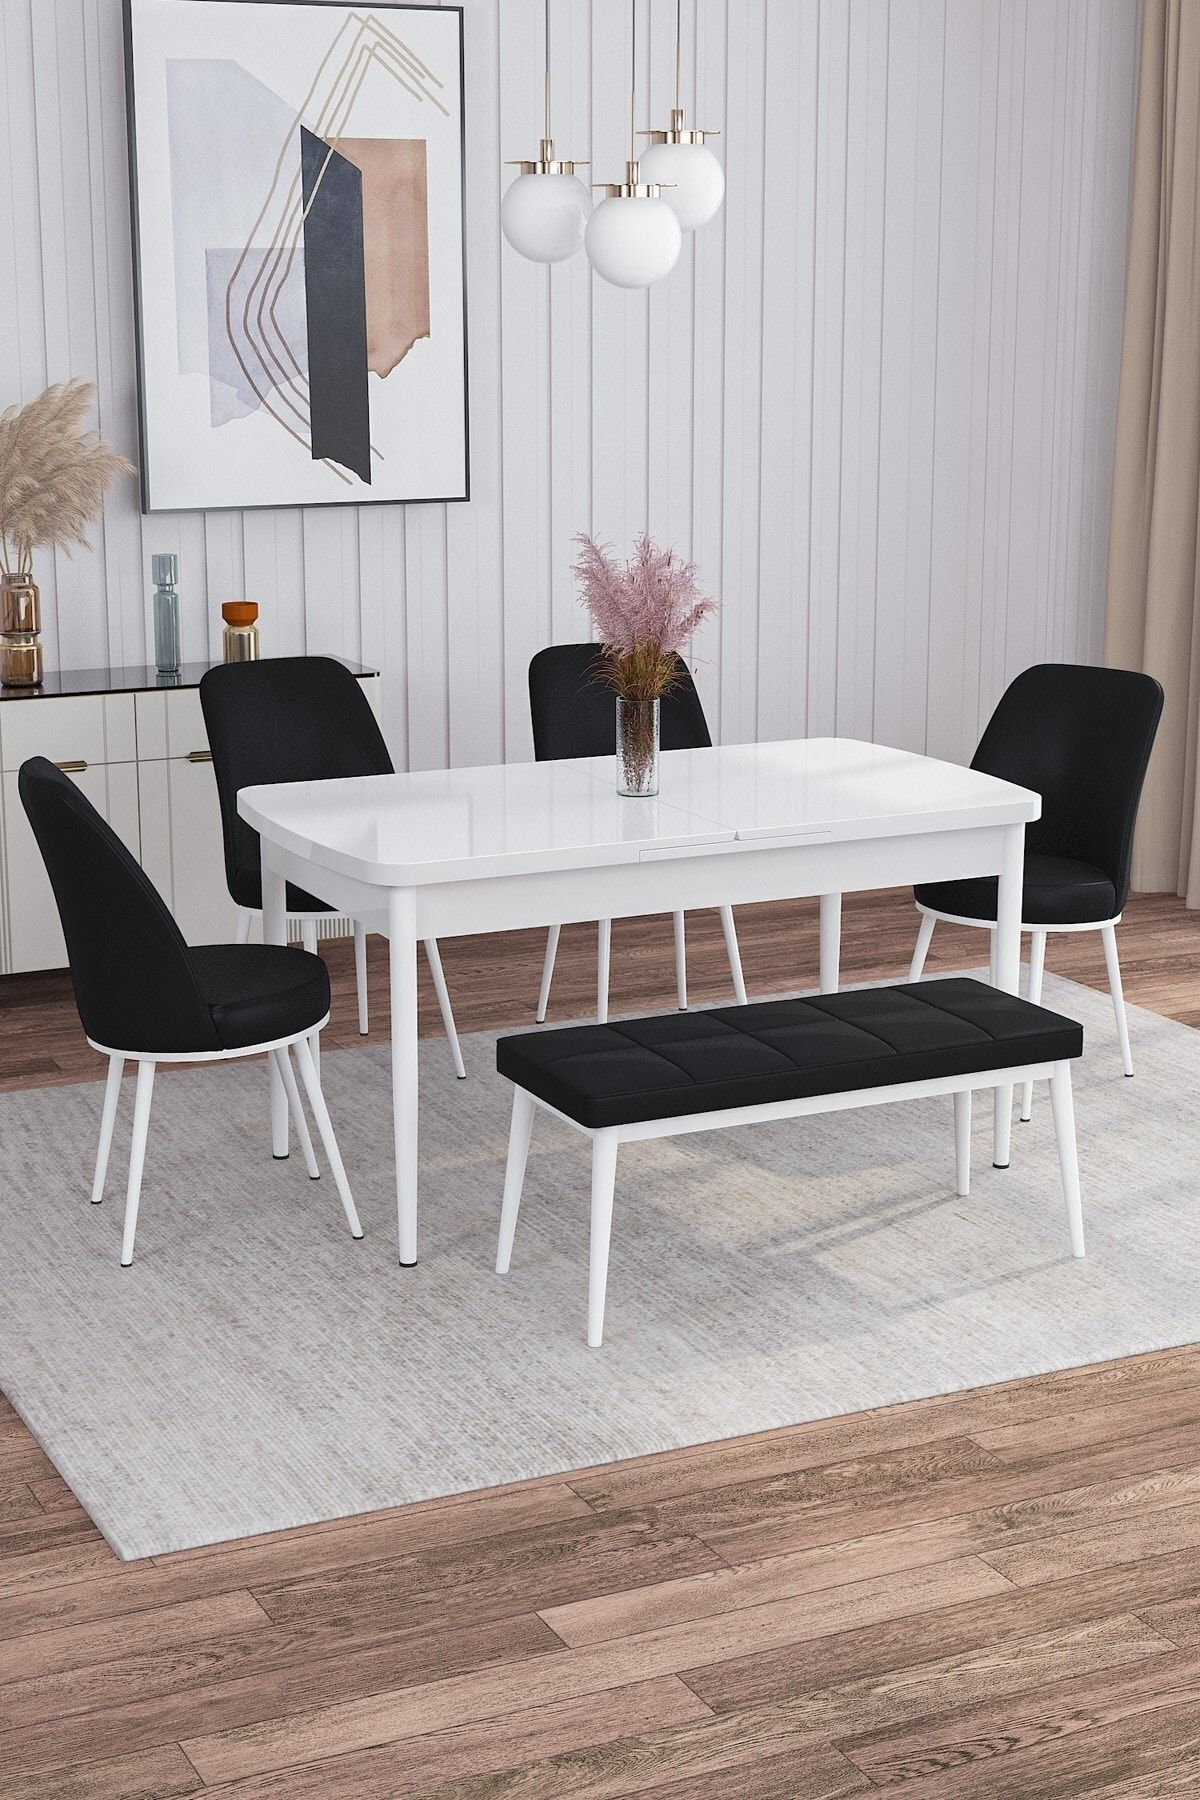 Rovena Leona Beyaz 80x132 Mdf Açılabilir Mutfak Masası Takımı 4 Sandalye, 1 Bench